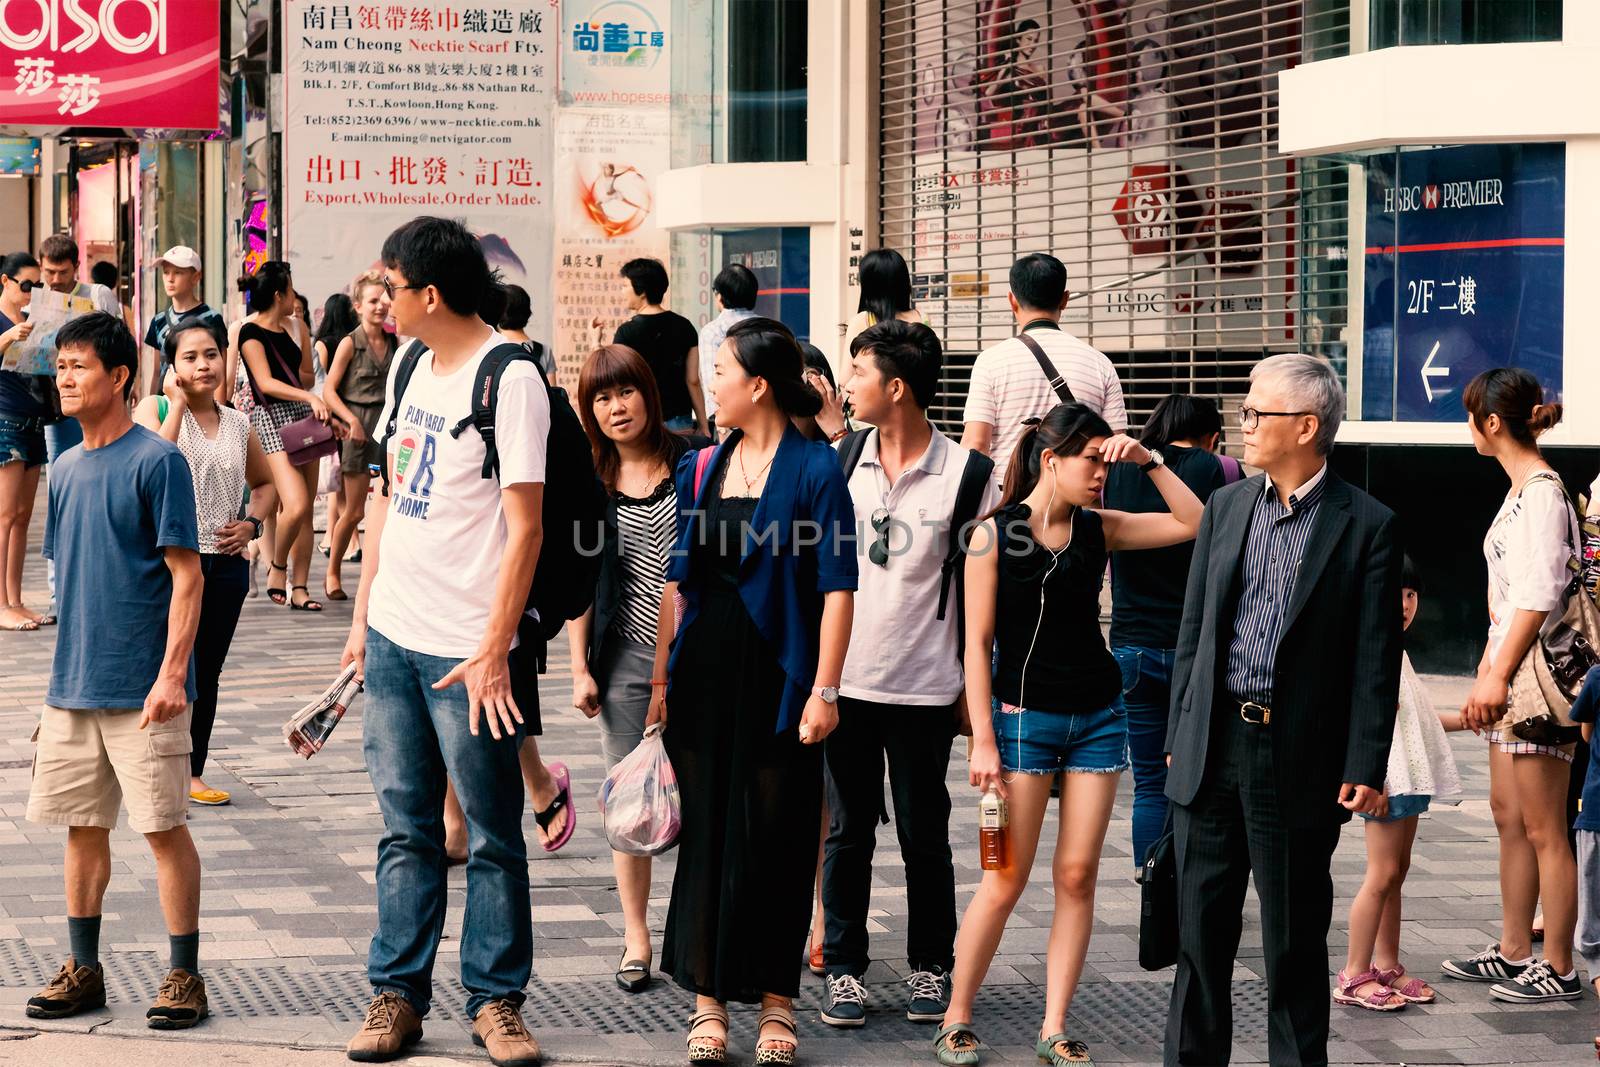 People waiting for the bus, Chungking Mansions, Nathan Road, Hong kong, China, 21 june, 2013.